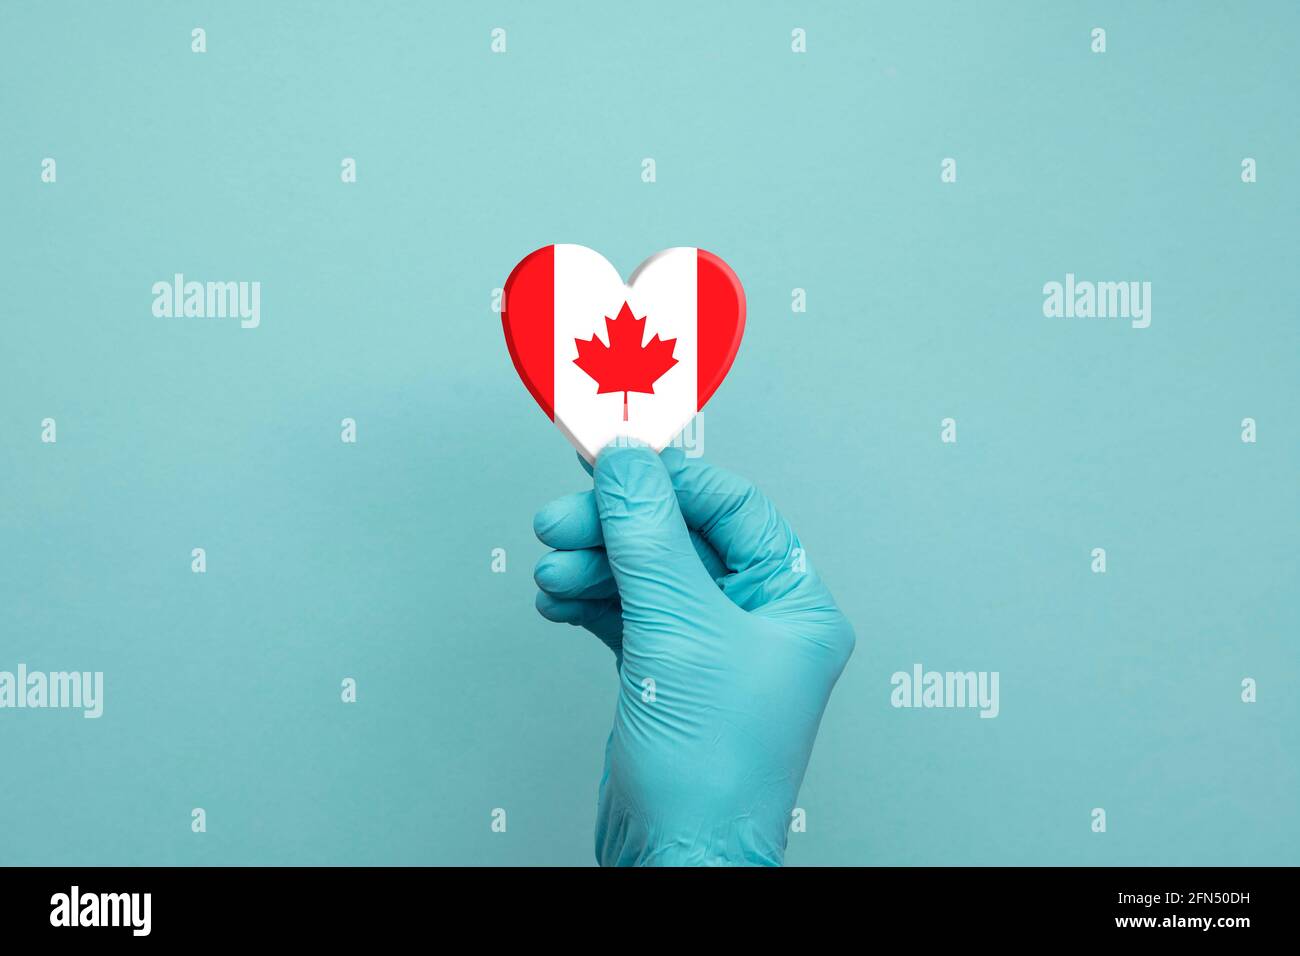 Mains portant des gants chirurgicaux de protection tenant le cœur du drapeau canadien Banque D'Images